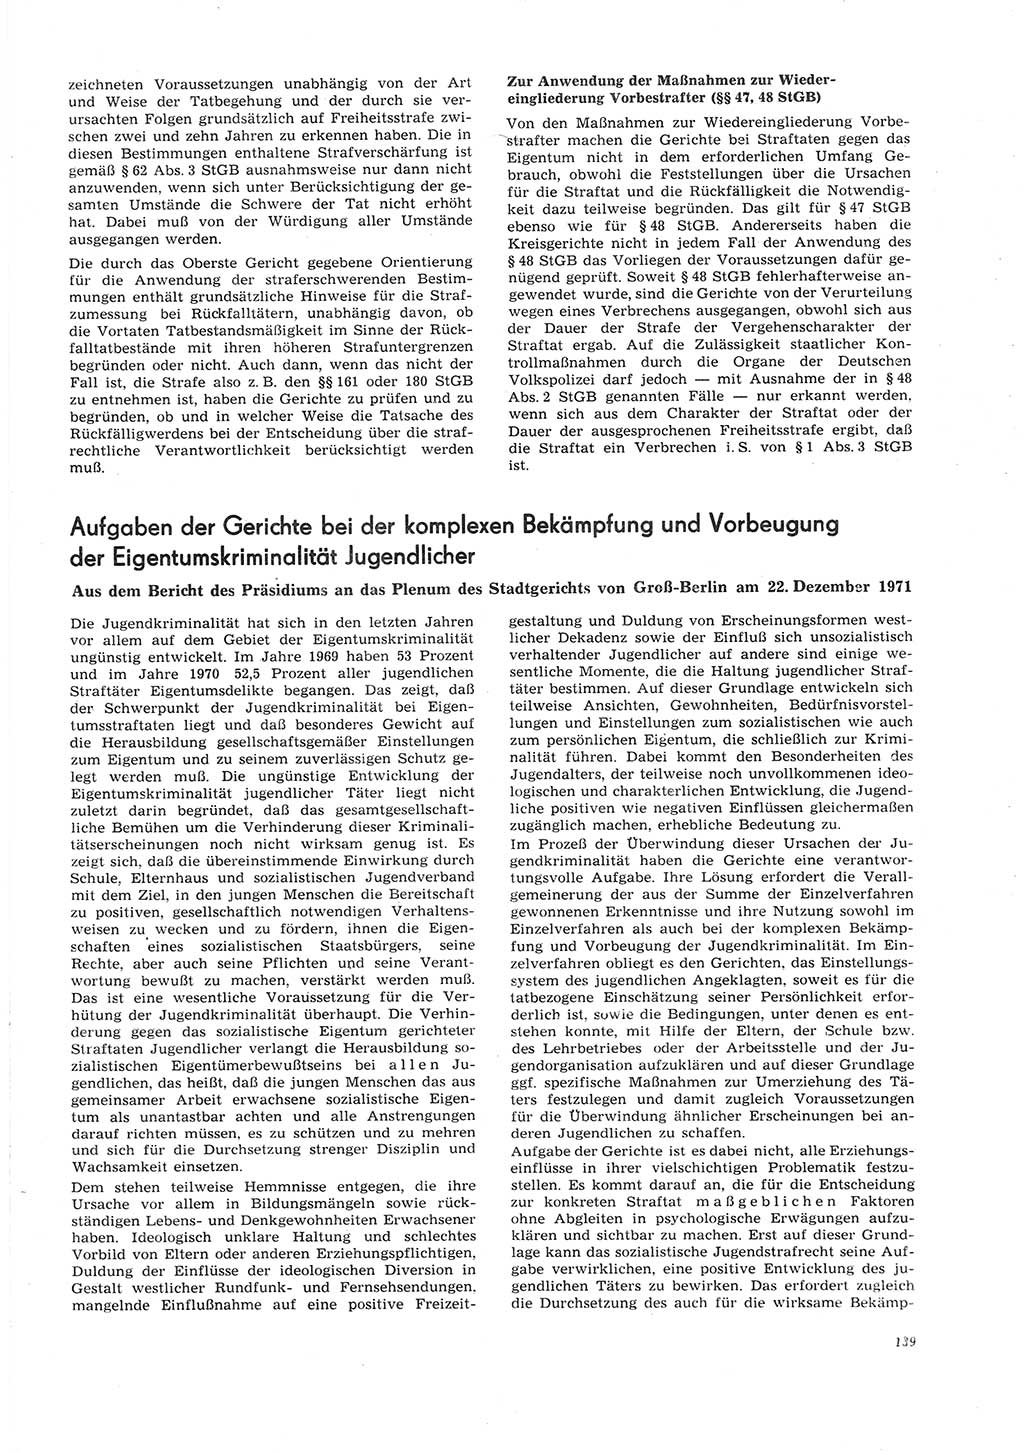 Neue Justiz (NJ), Zeitschrift für Recht und Rechtswissenschaft [Deutsche Demokratische Republik (DDR)], 26. Jahrgang 1972, Seite 139 (NJ DDR 1972, S. 139)